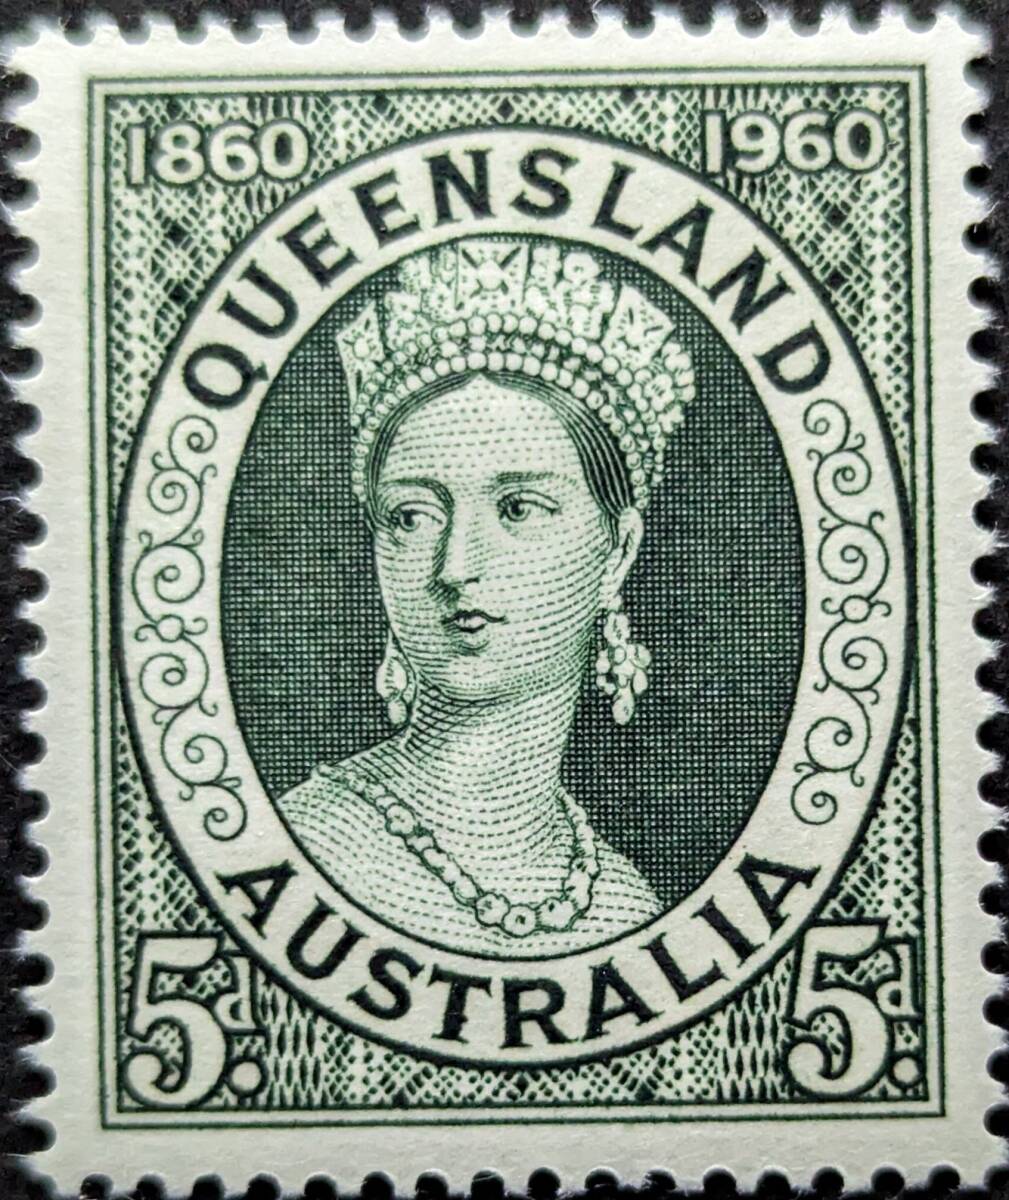 【外国切手】 オーストラリア 1960年11月02日 発行 クイーンズランド切手の100周年記念 未使用_画像1